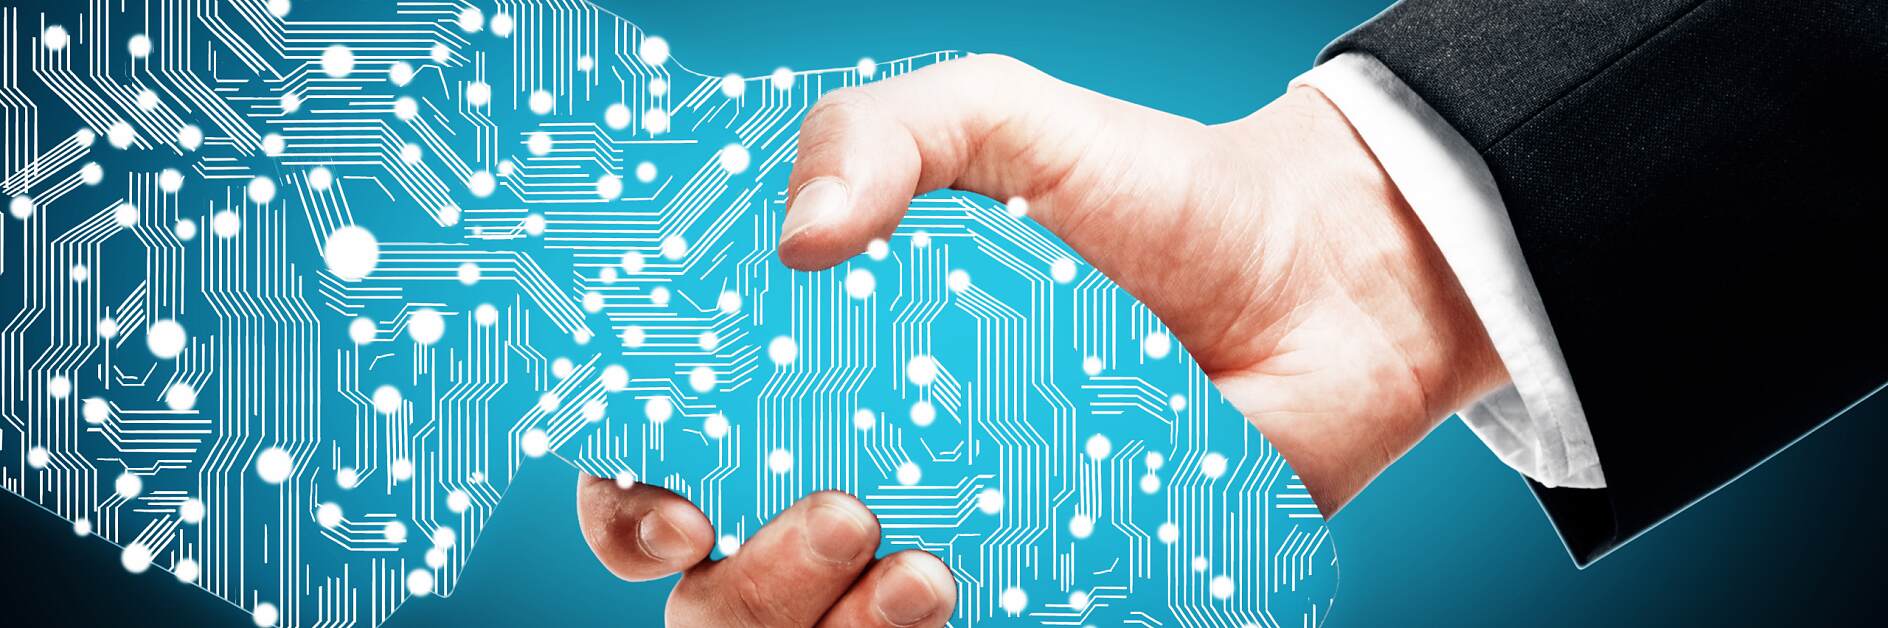 Digital handshake on blue background